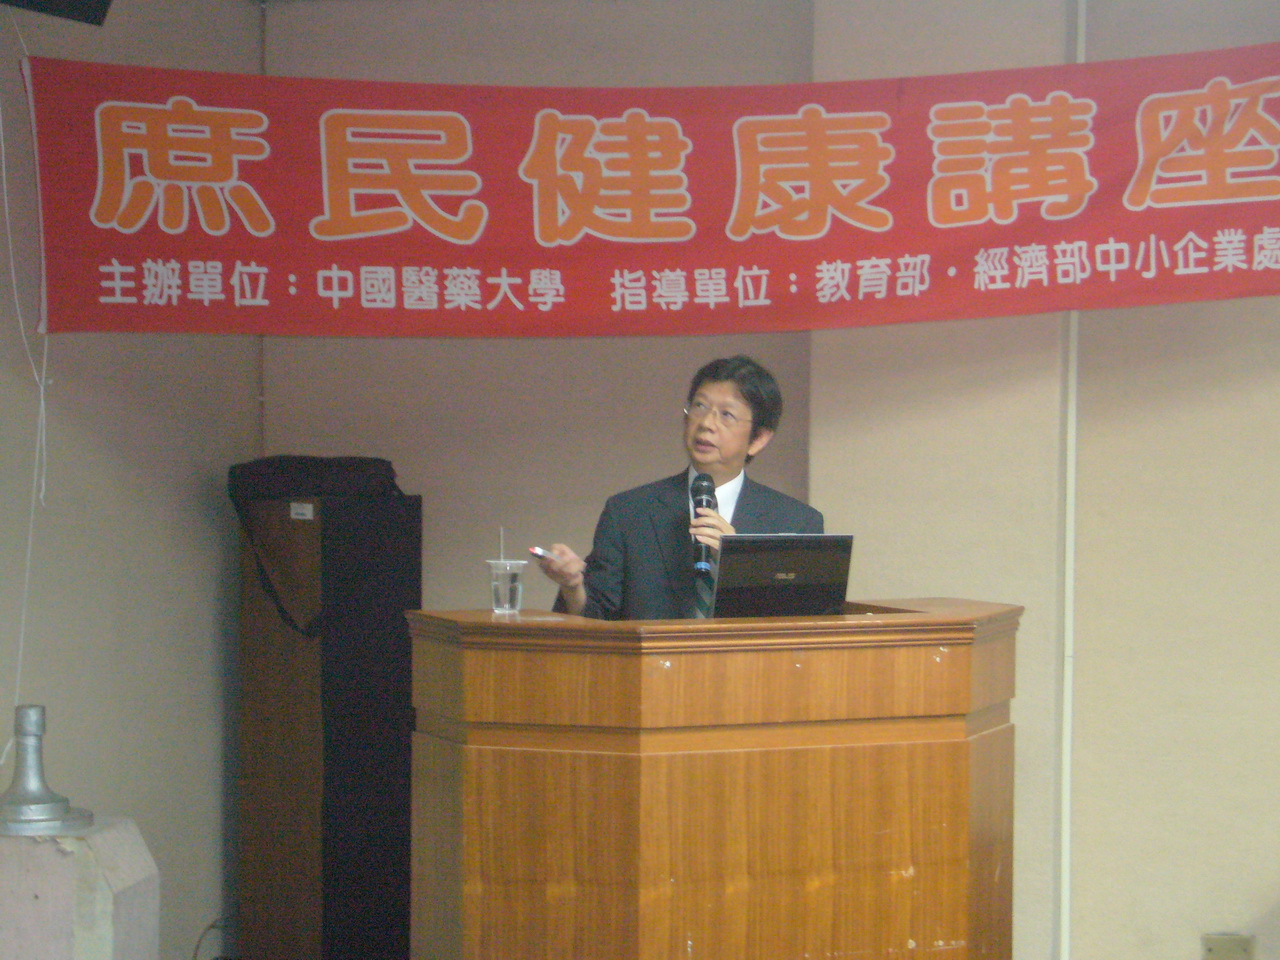 醫學系小兒科醫師陳偉德教授講授魚油護身大法